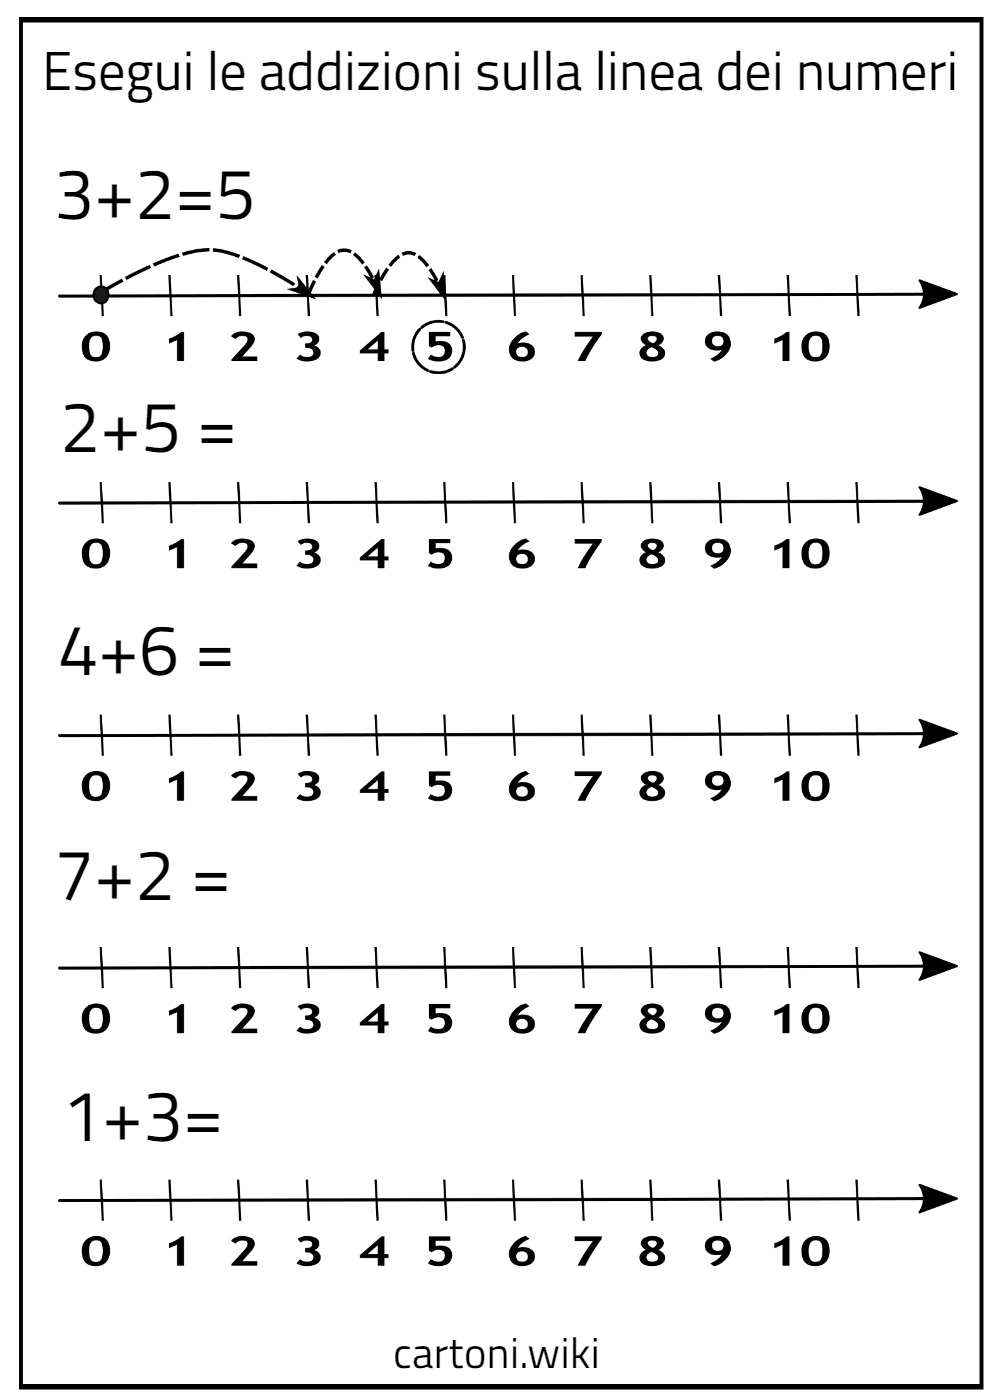 Scheda didattica addizioni linea dei numeri